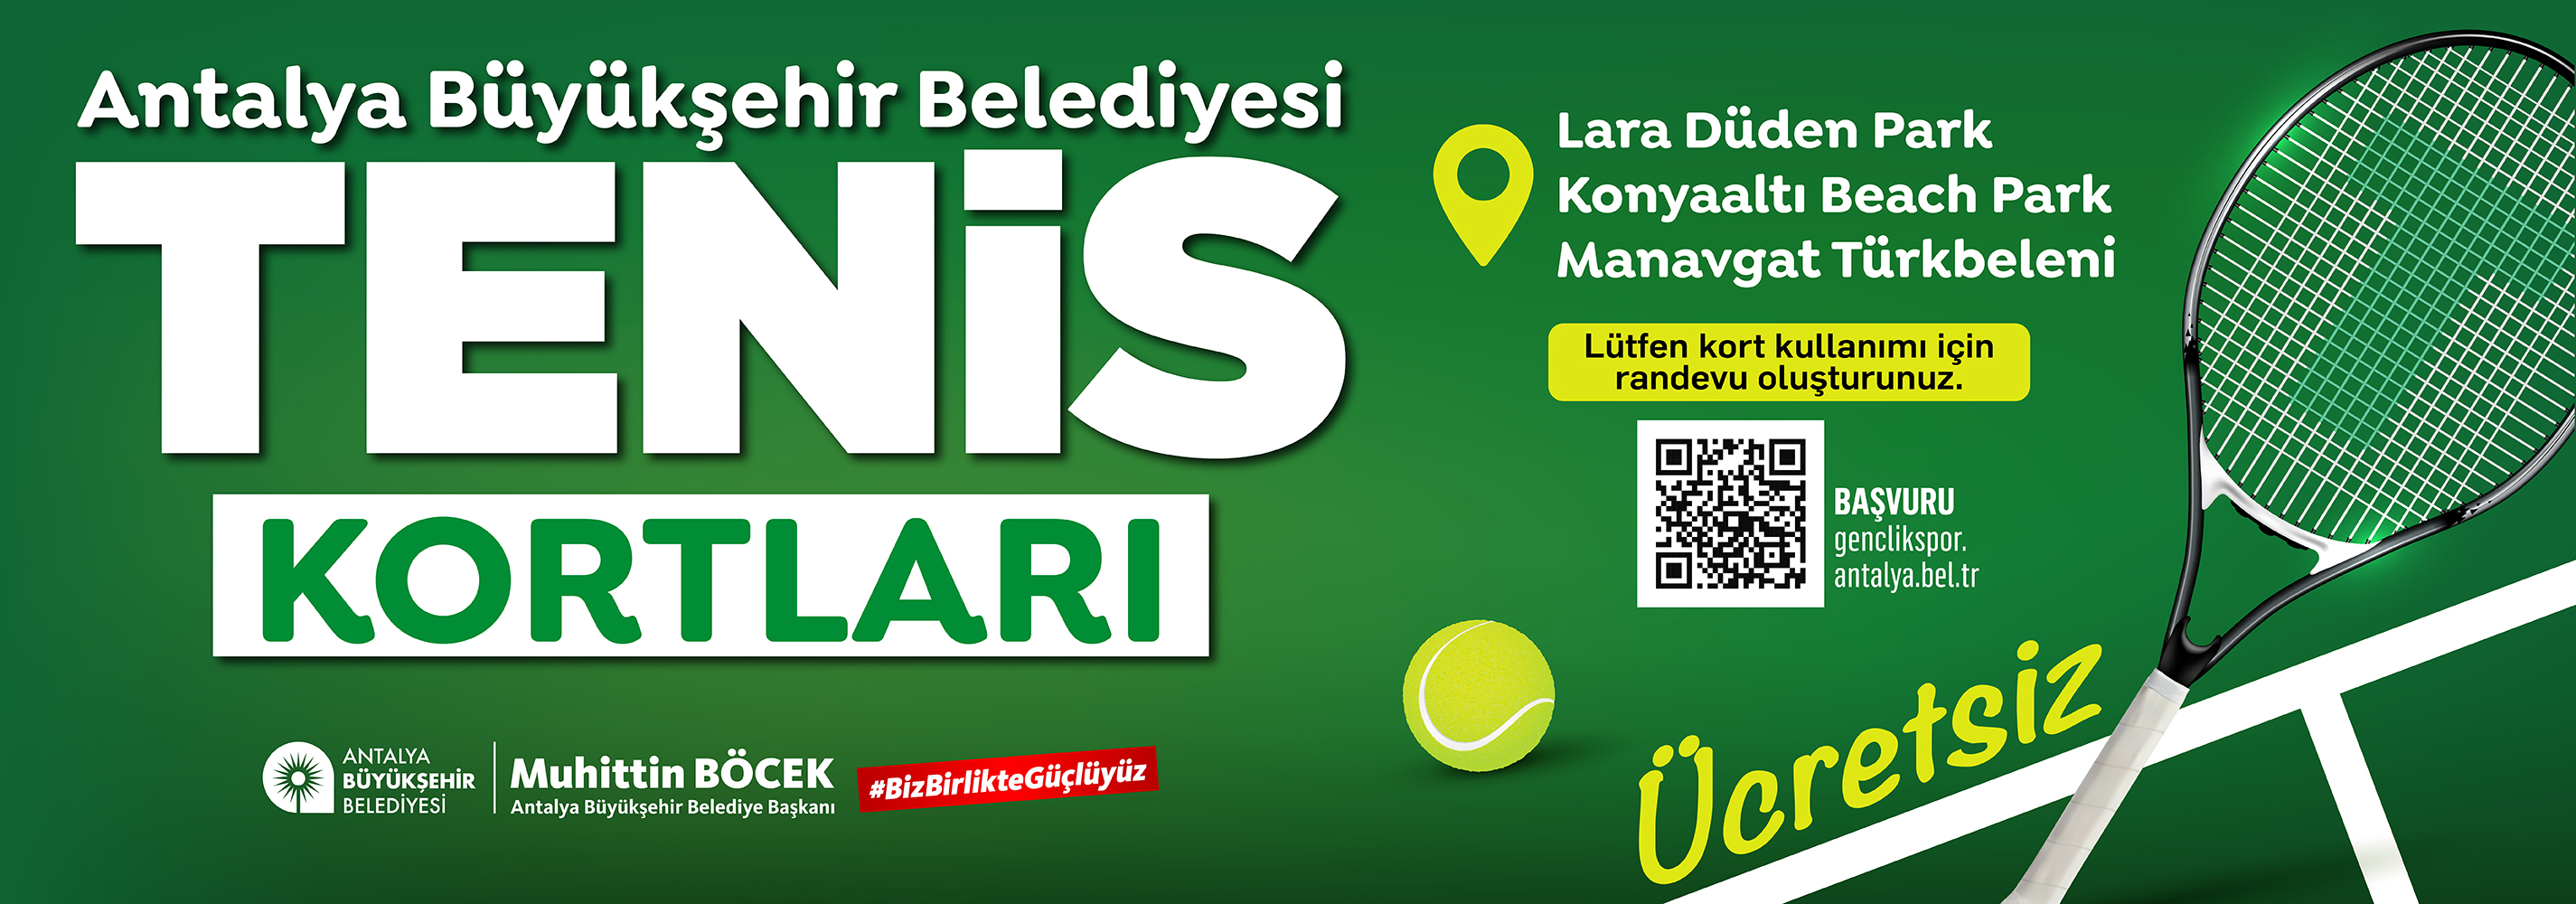 Antalya'da enis keyfi: Antalya Büyükşehir Belediyesi'nden ücretsiz tenis kortları